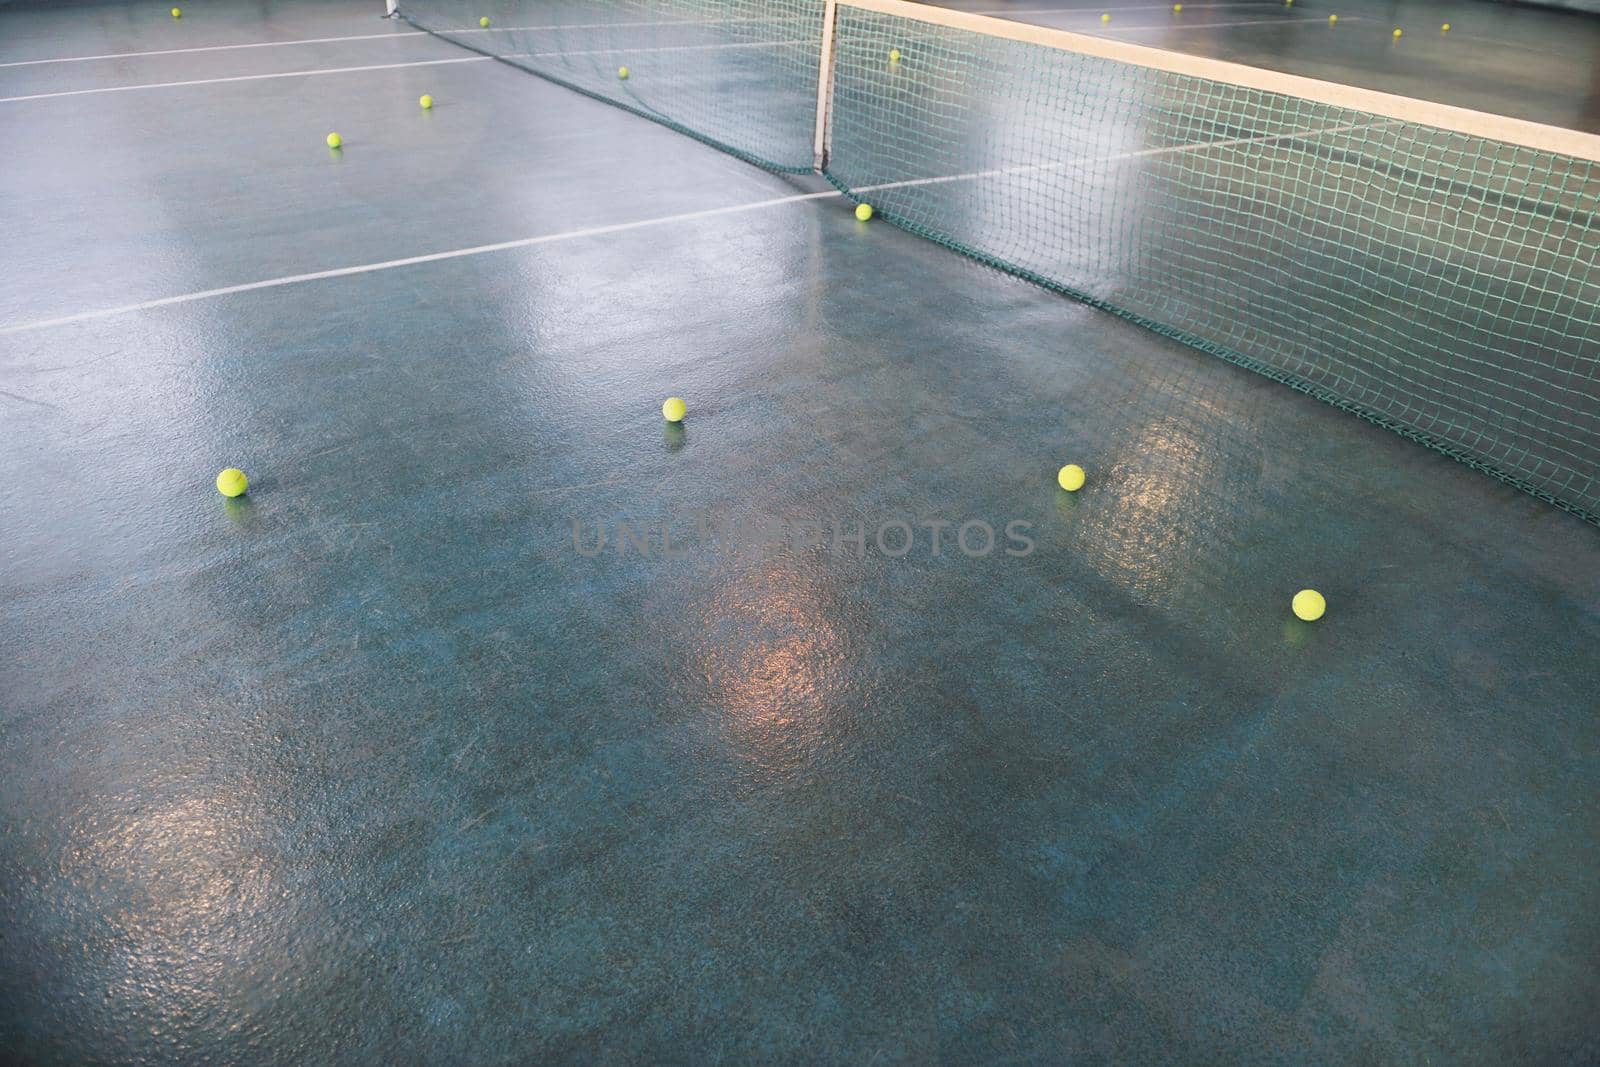 manny tennis bals on indoor sport court 